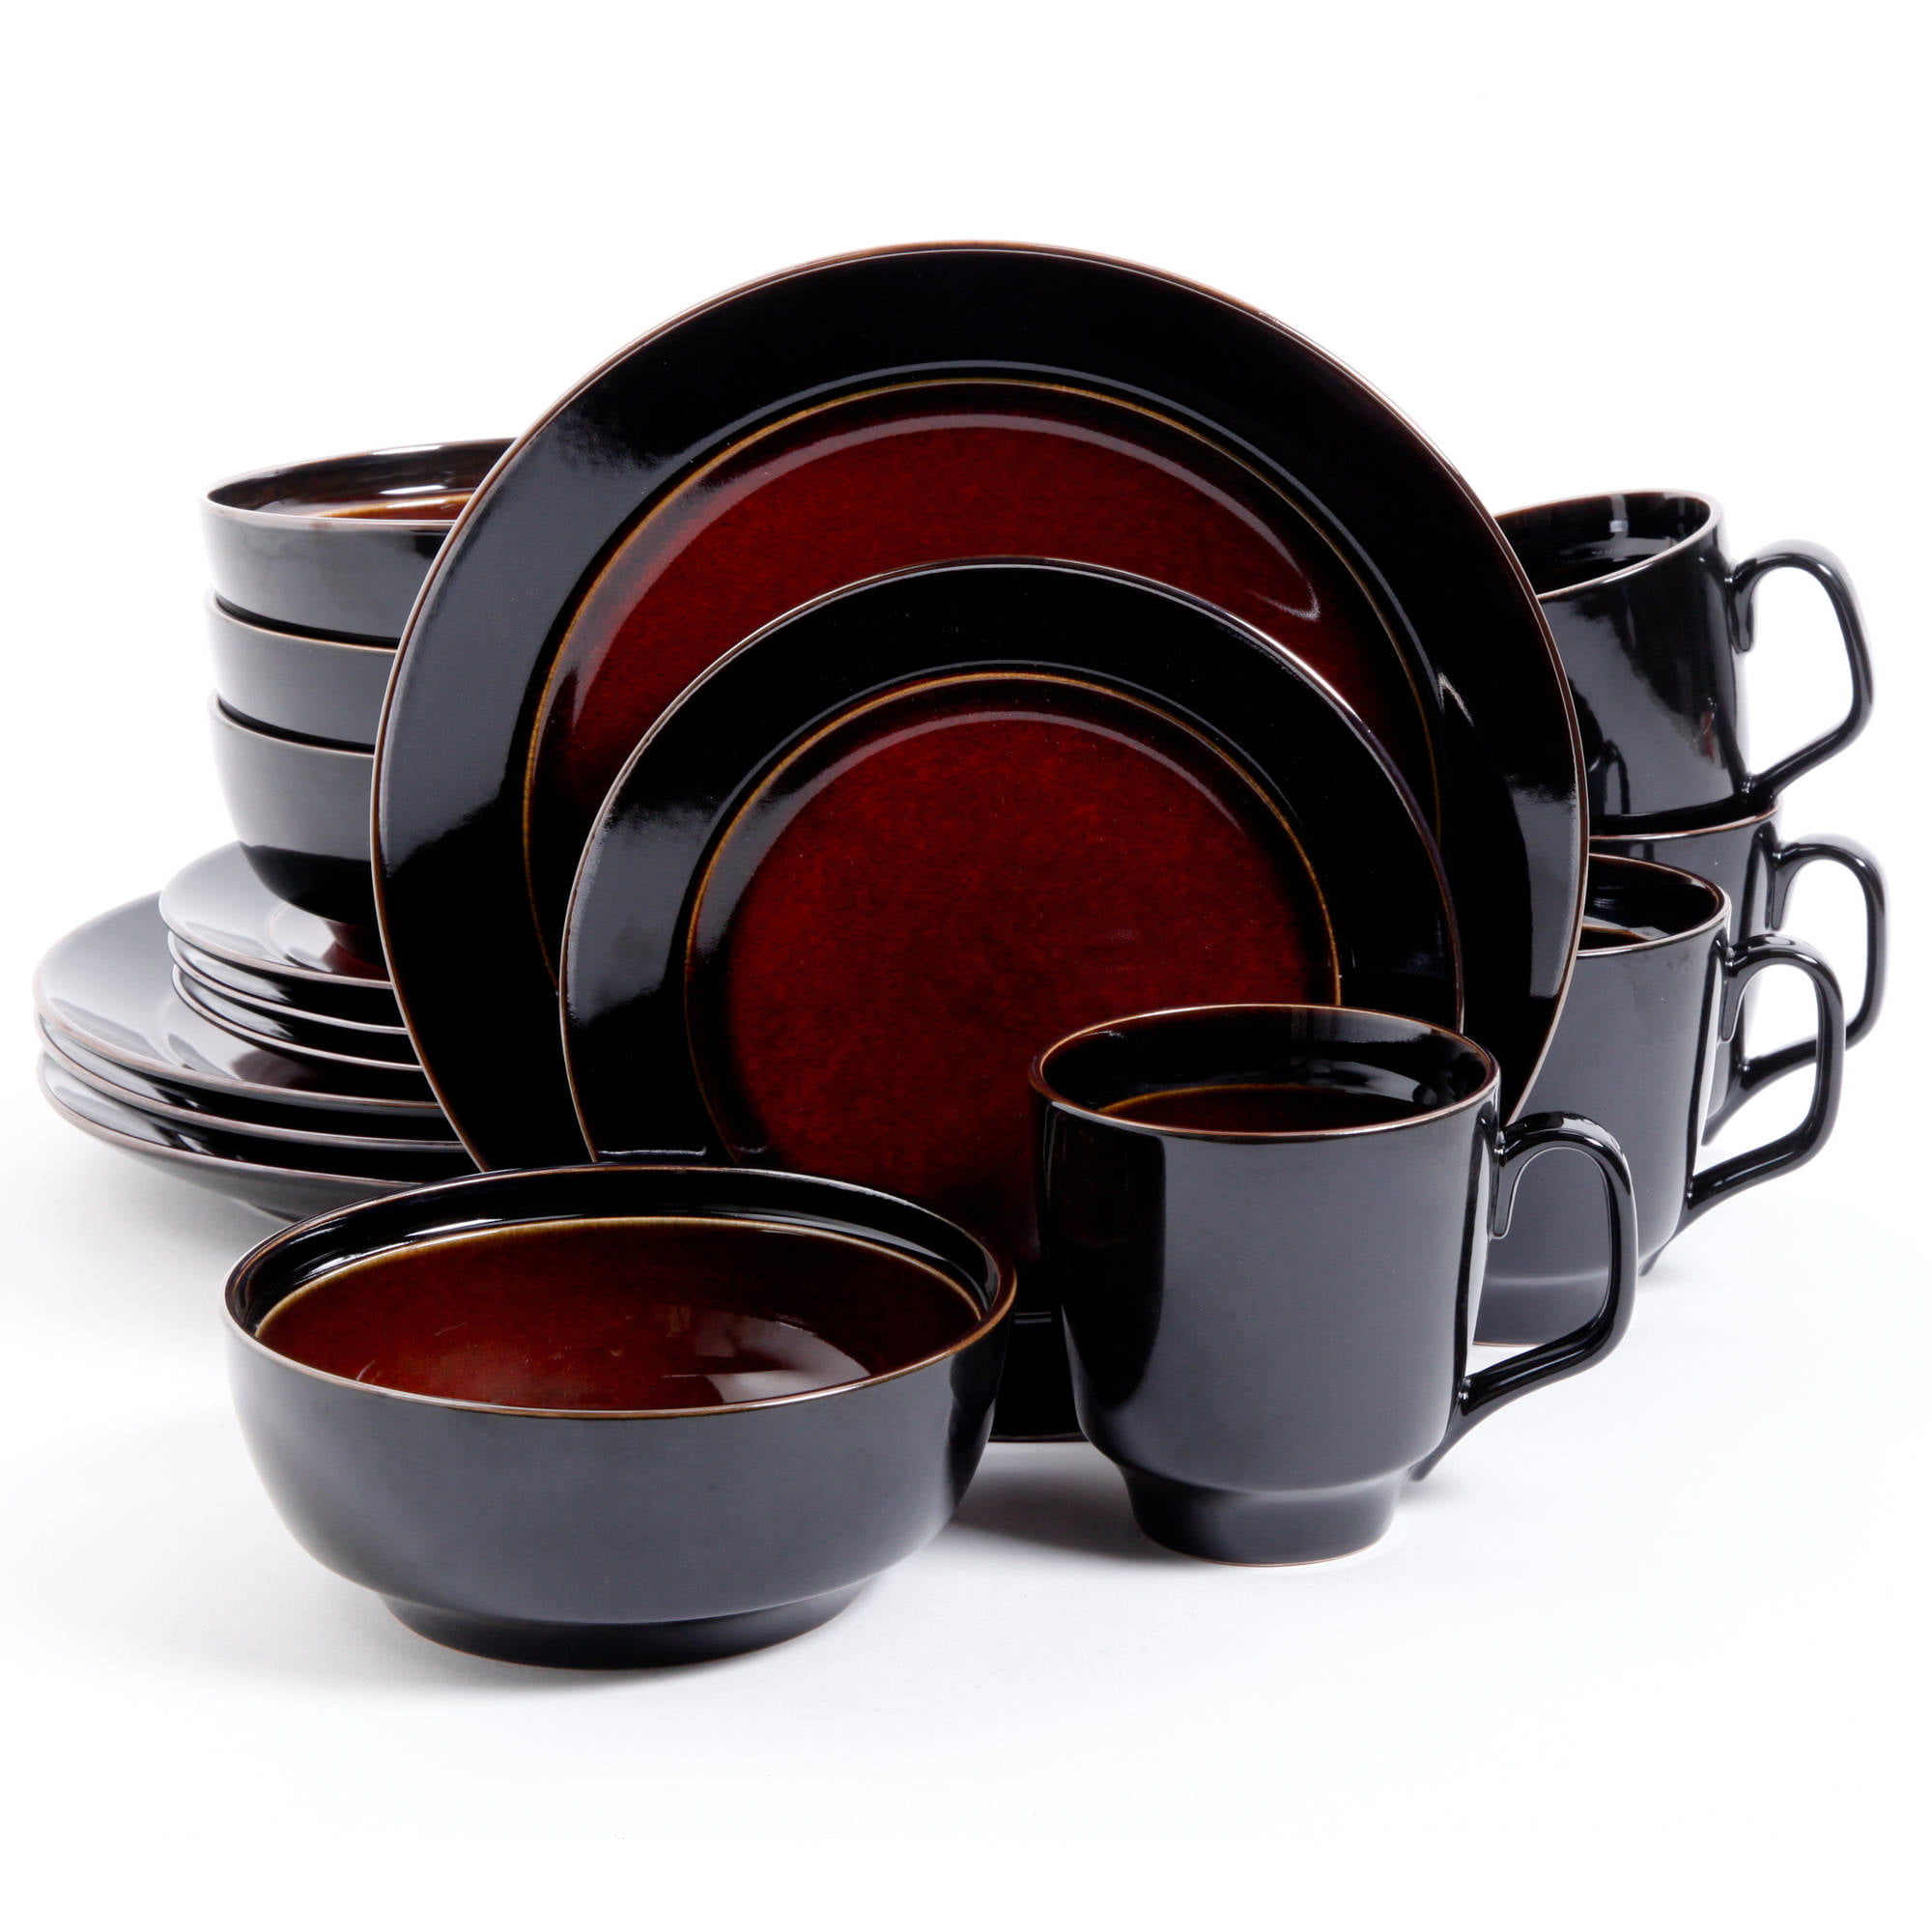 Купить красную посуду. Stoneware Dinnerware Set посуда. Столовый сервиз quadrato Oxfo Red Black. Elite Gibson посуда. Томпсон набор столовой посуды черно красный.